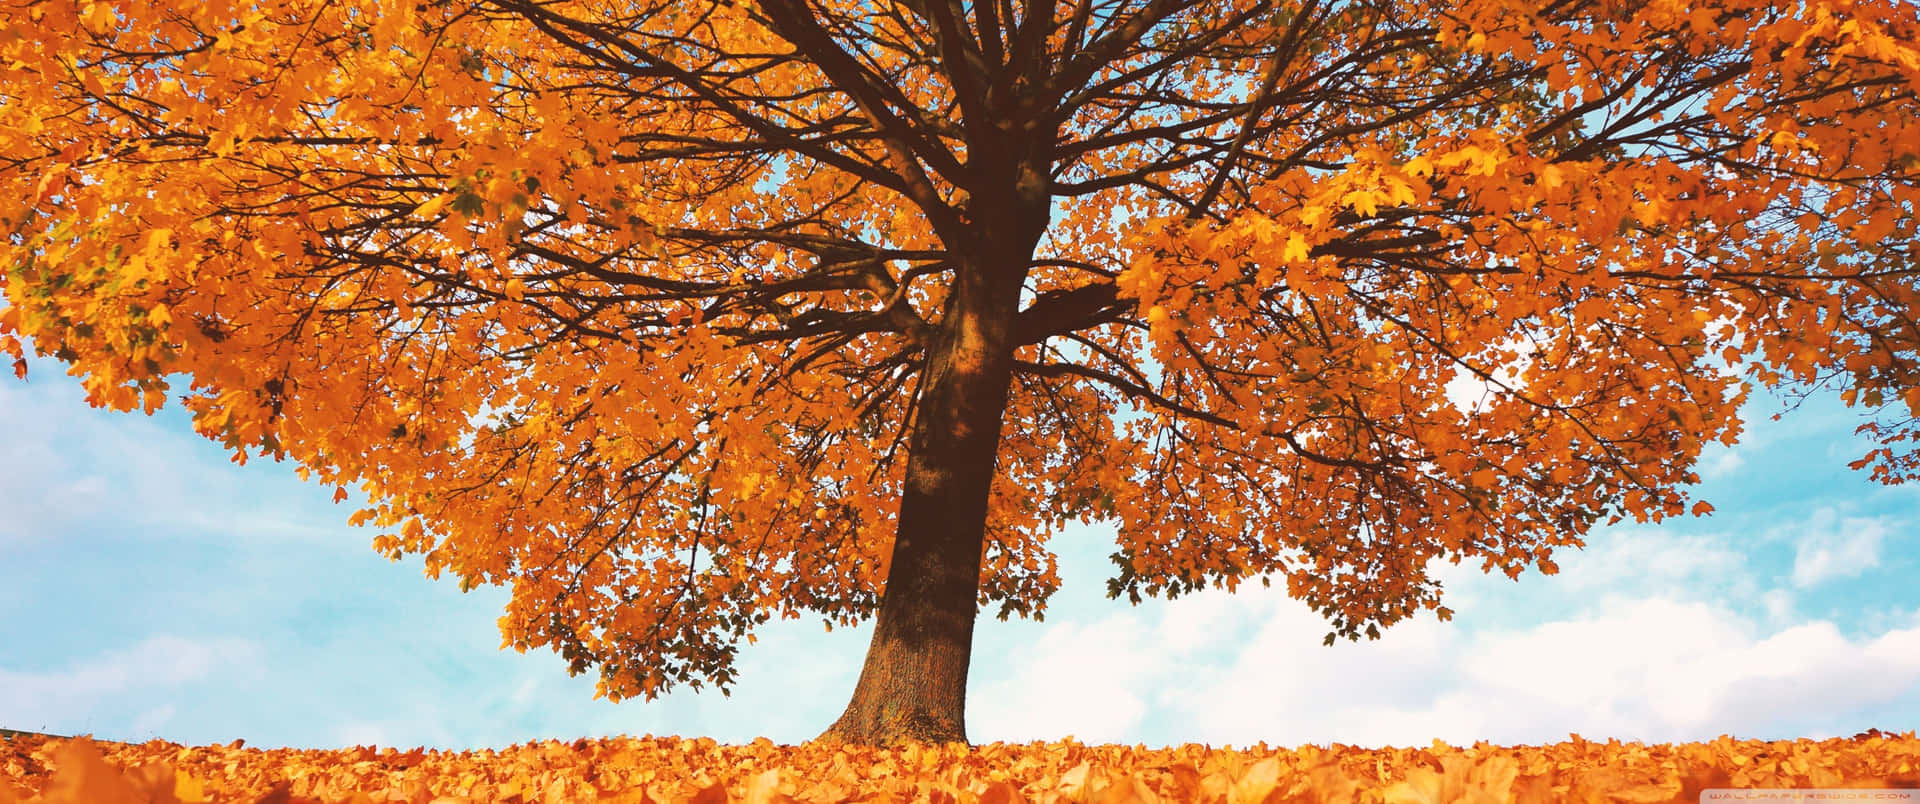 3440x1440 Fall Season Tree In Blue Sky Wallpaper